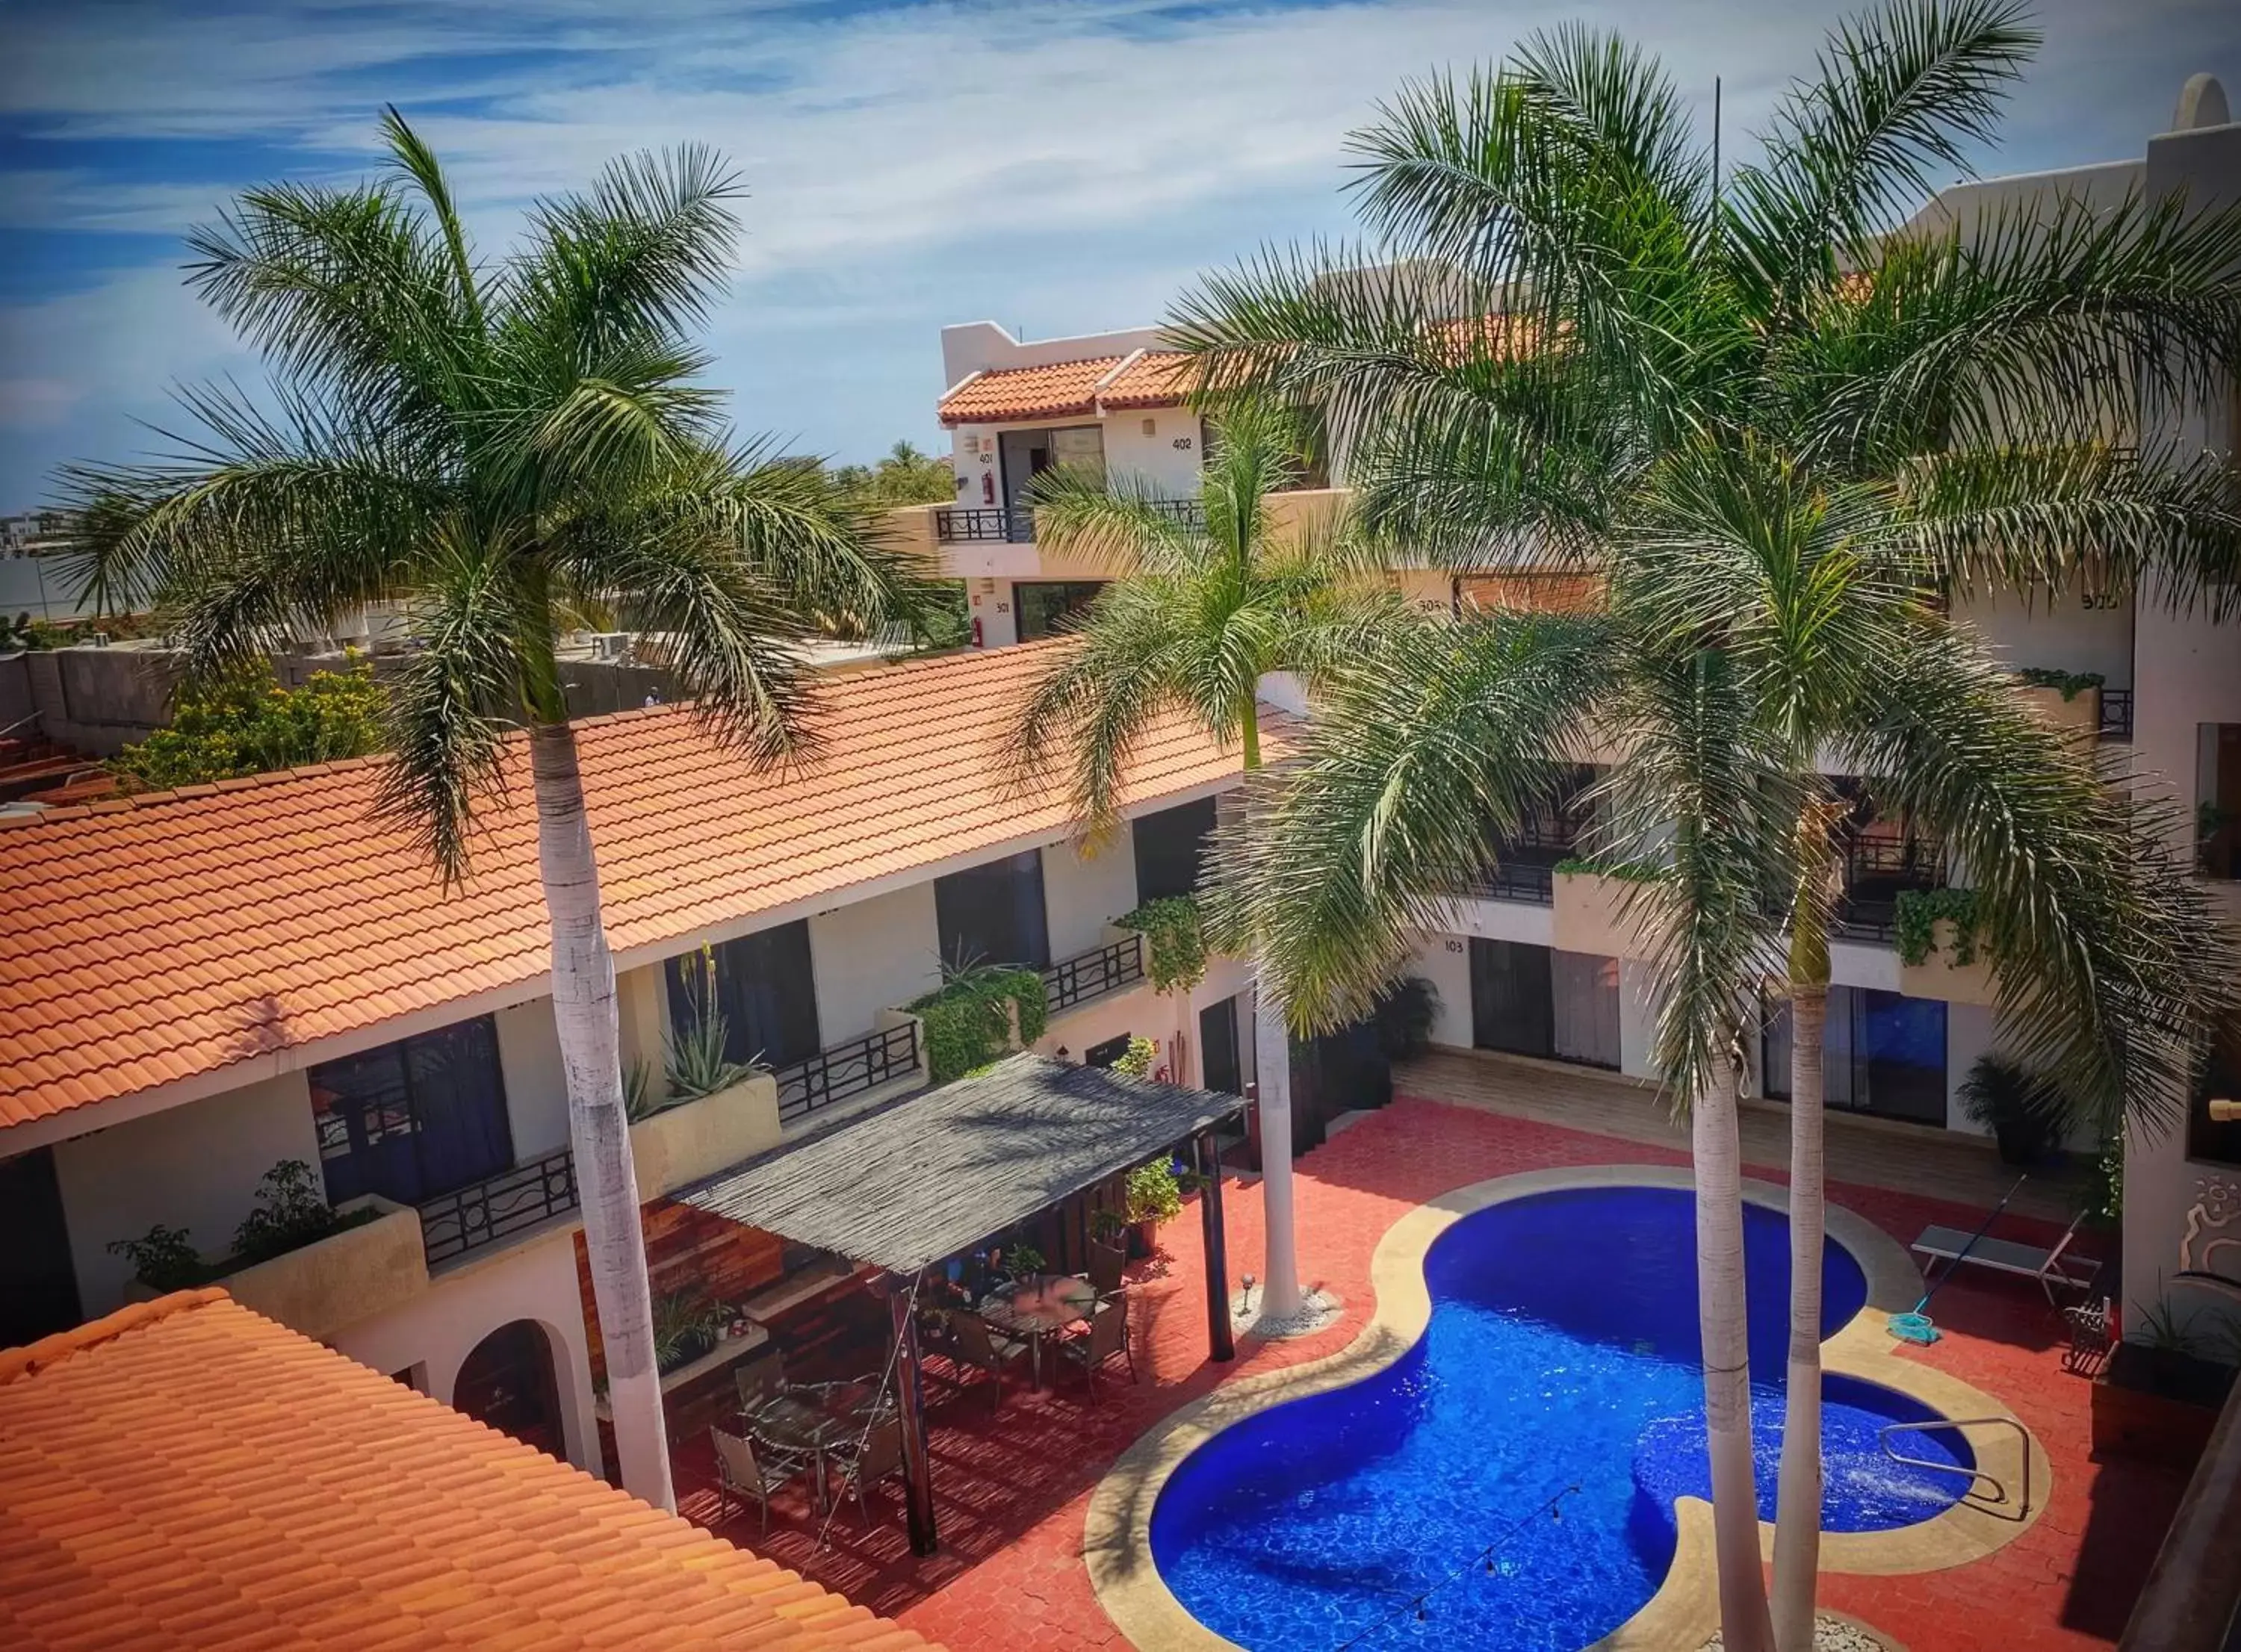 Pool View in Hotel Santa Fe Los Cabos by Villa Group